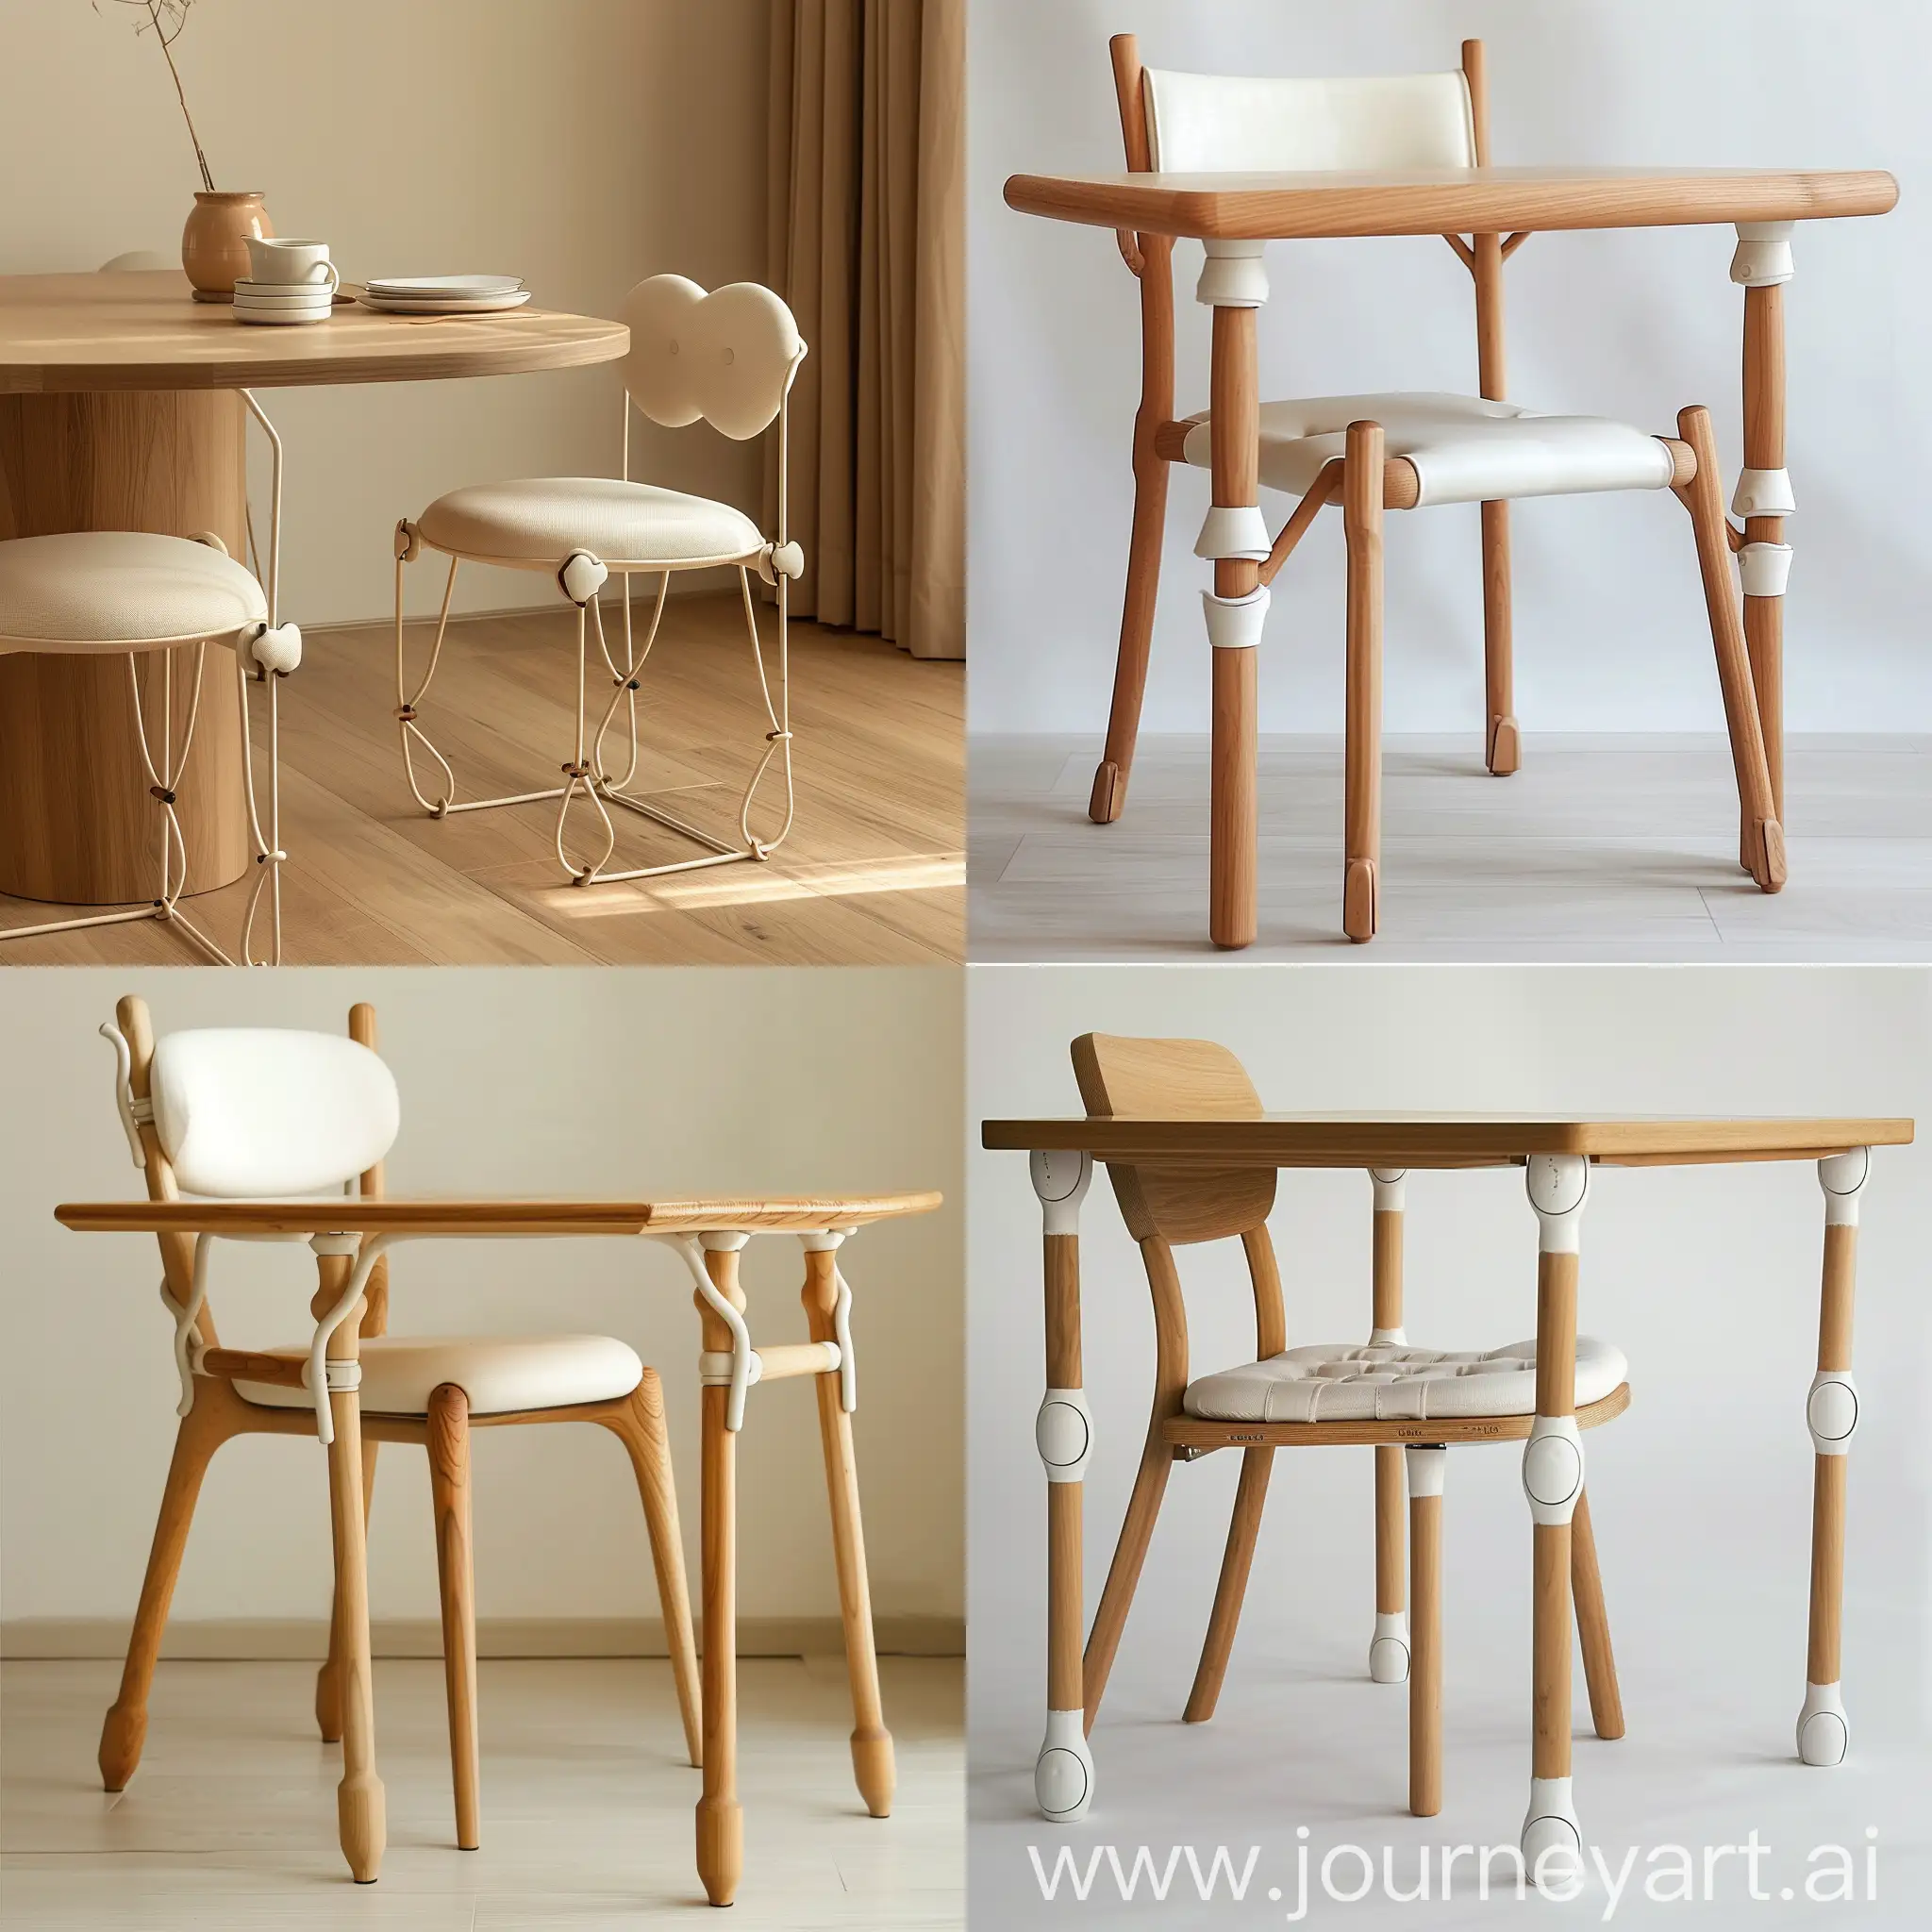 Минималистичный дизайн стула и обеденного стола, у стола и стула в ножках керамические соединения, джапанди, японский минимализм, скандинавский стиль , сиденье и спинка стула мягкие , тонкие ножки у стула и стола, плавные линии